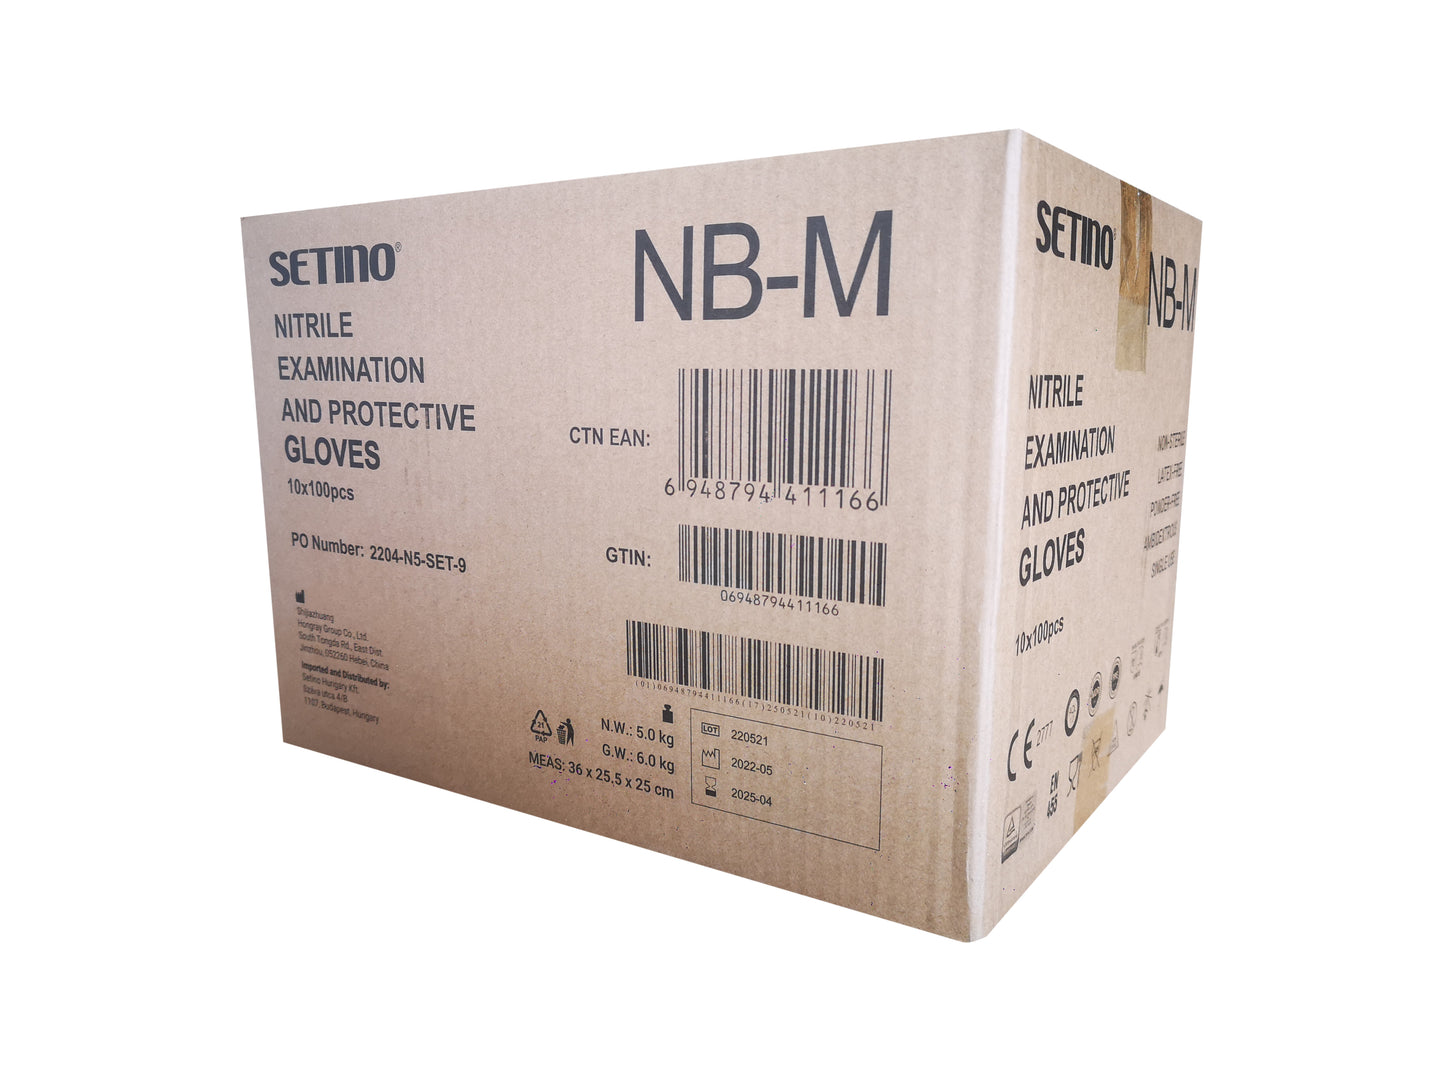 NPF4001-4005 exame de nitrilo e luva de protecção preta sem pó 5 gramas